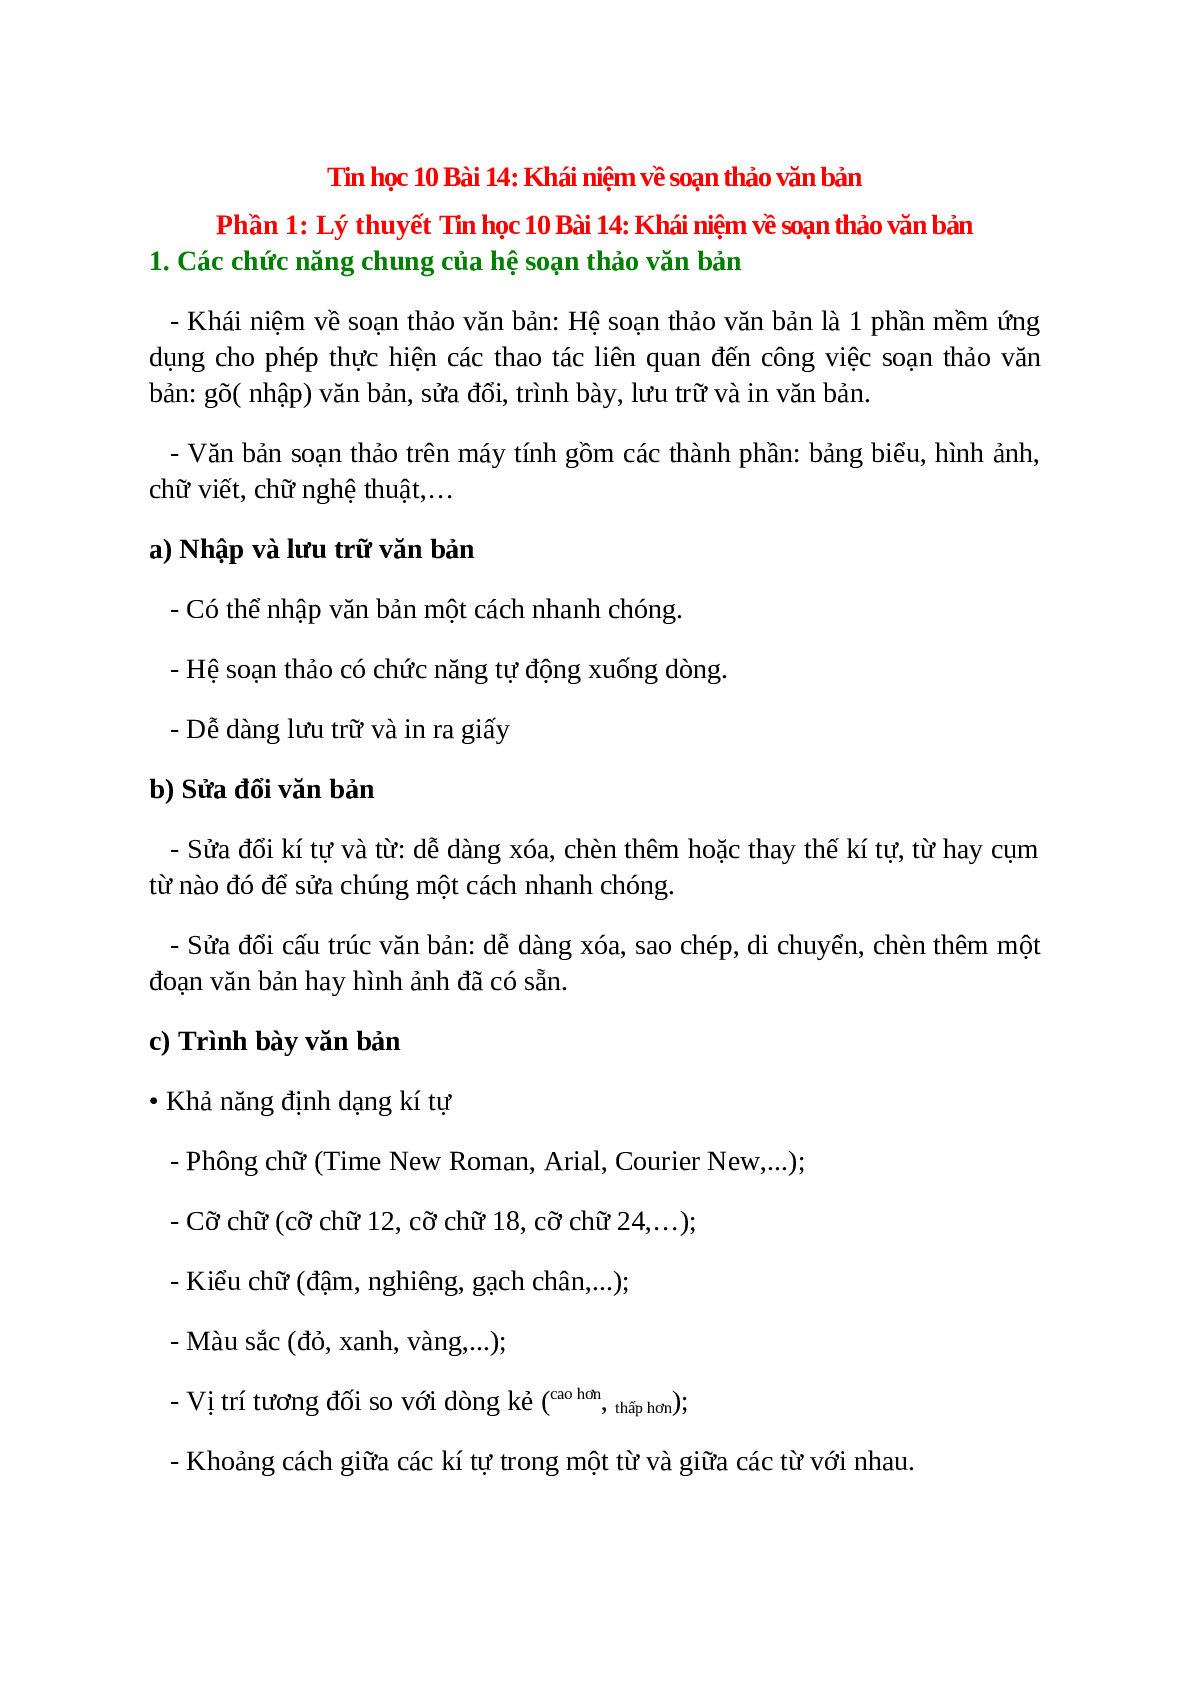 Tin học 10 Bài 14: Khái niệm về soạn thảo văn bản (trang 1)